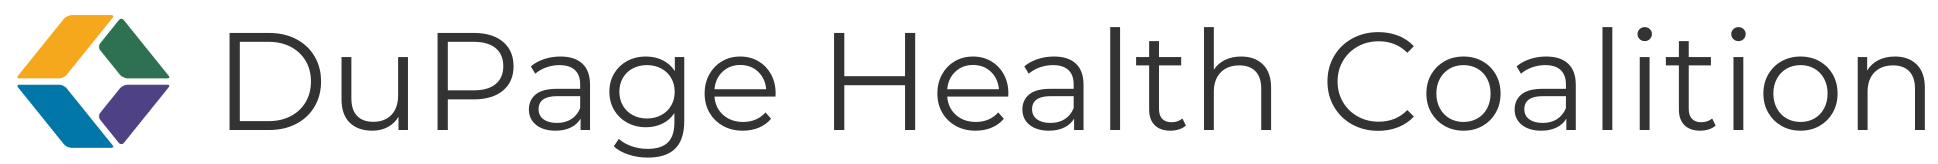 Logotipo de la Coalición de Salud de DuPage Horizontal